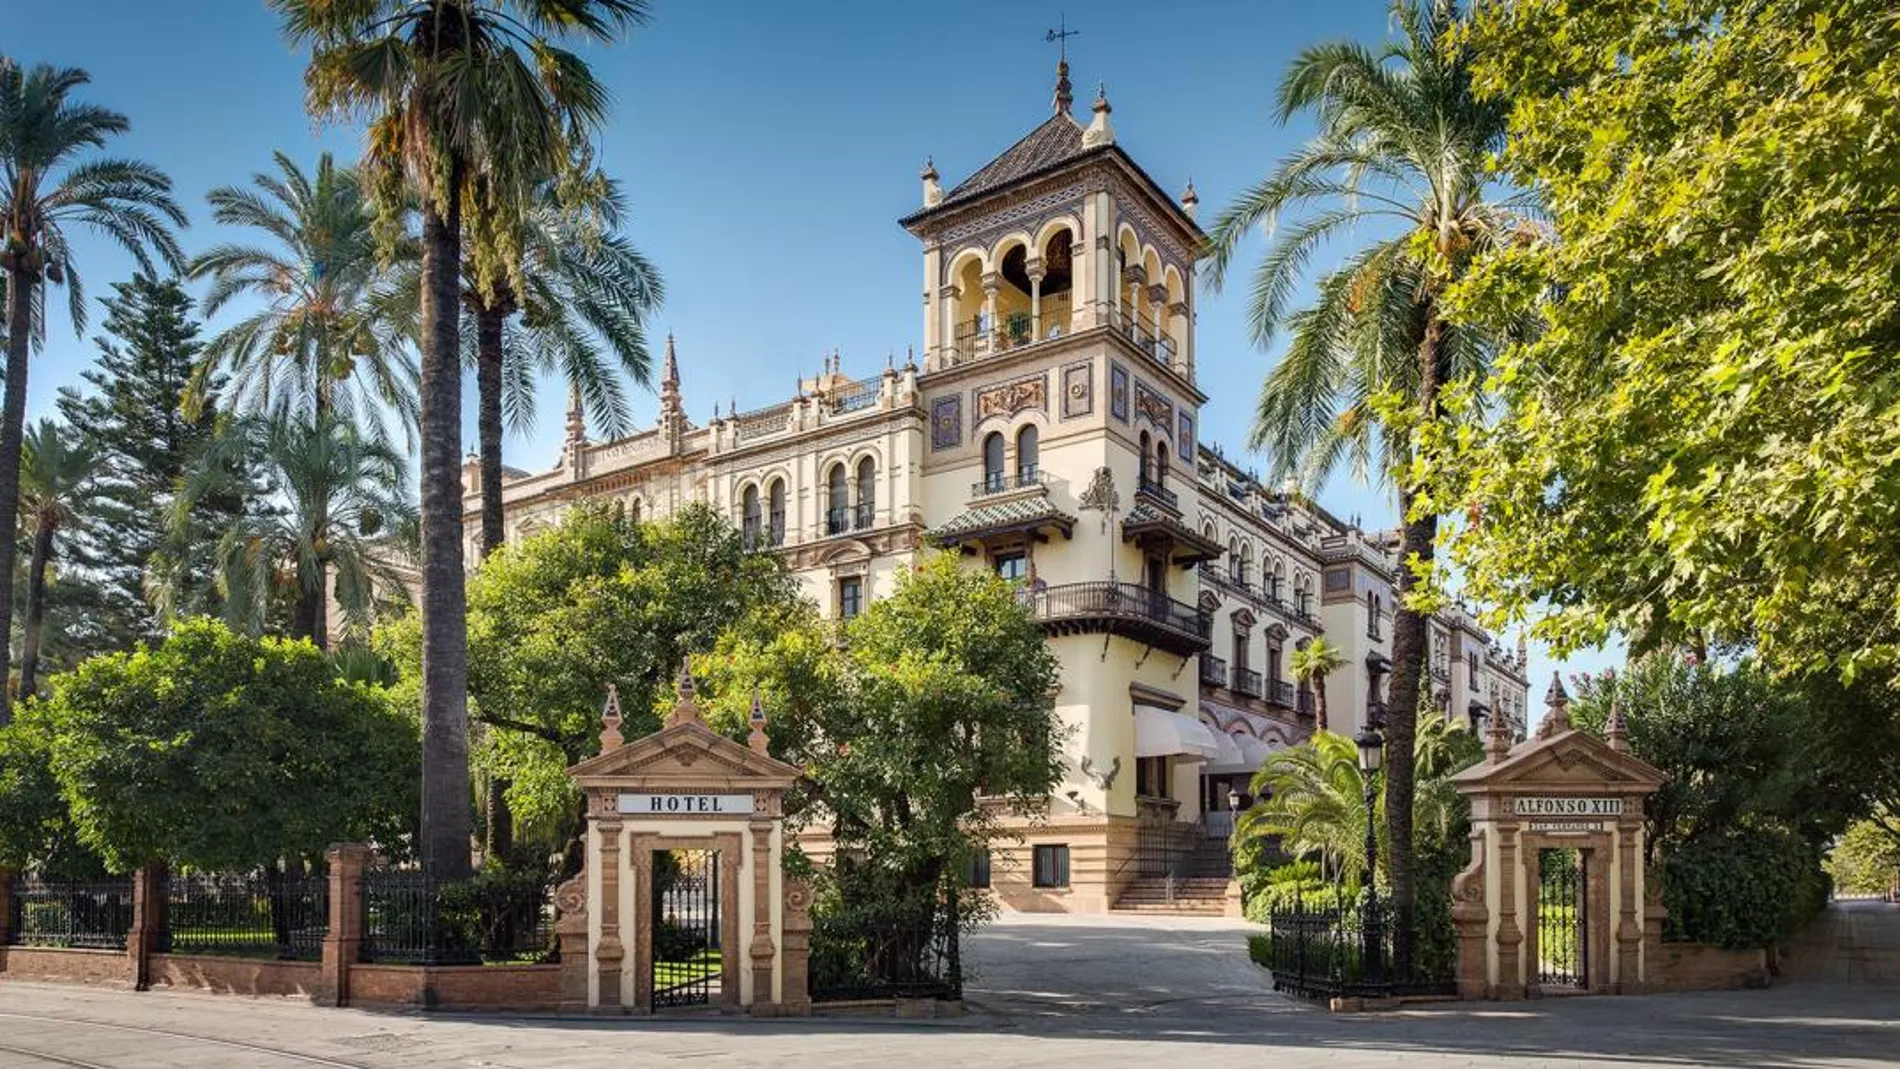 El Hotel Alfonso XIII está considerado Bien de Interés Cultural desde 1998